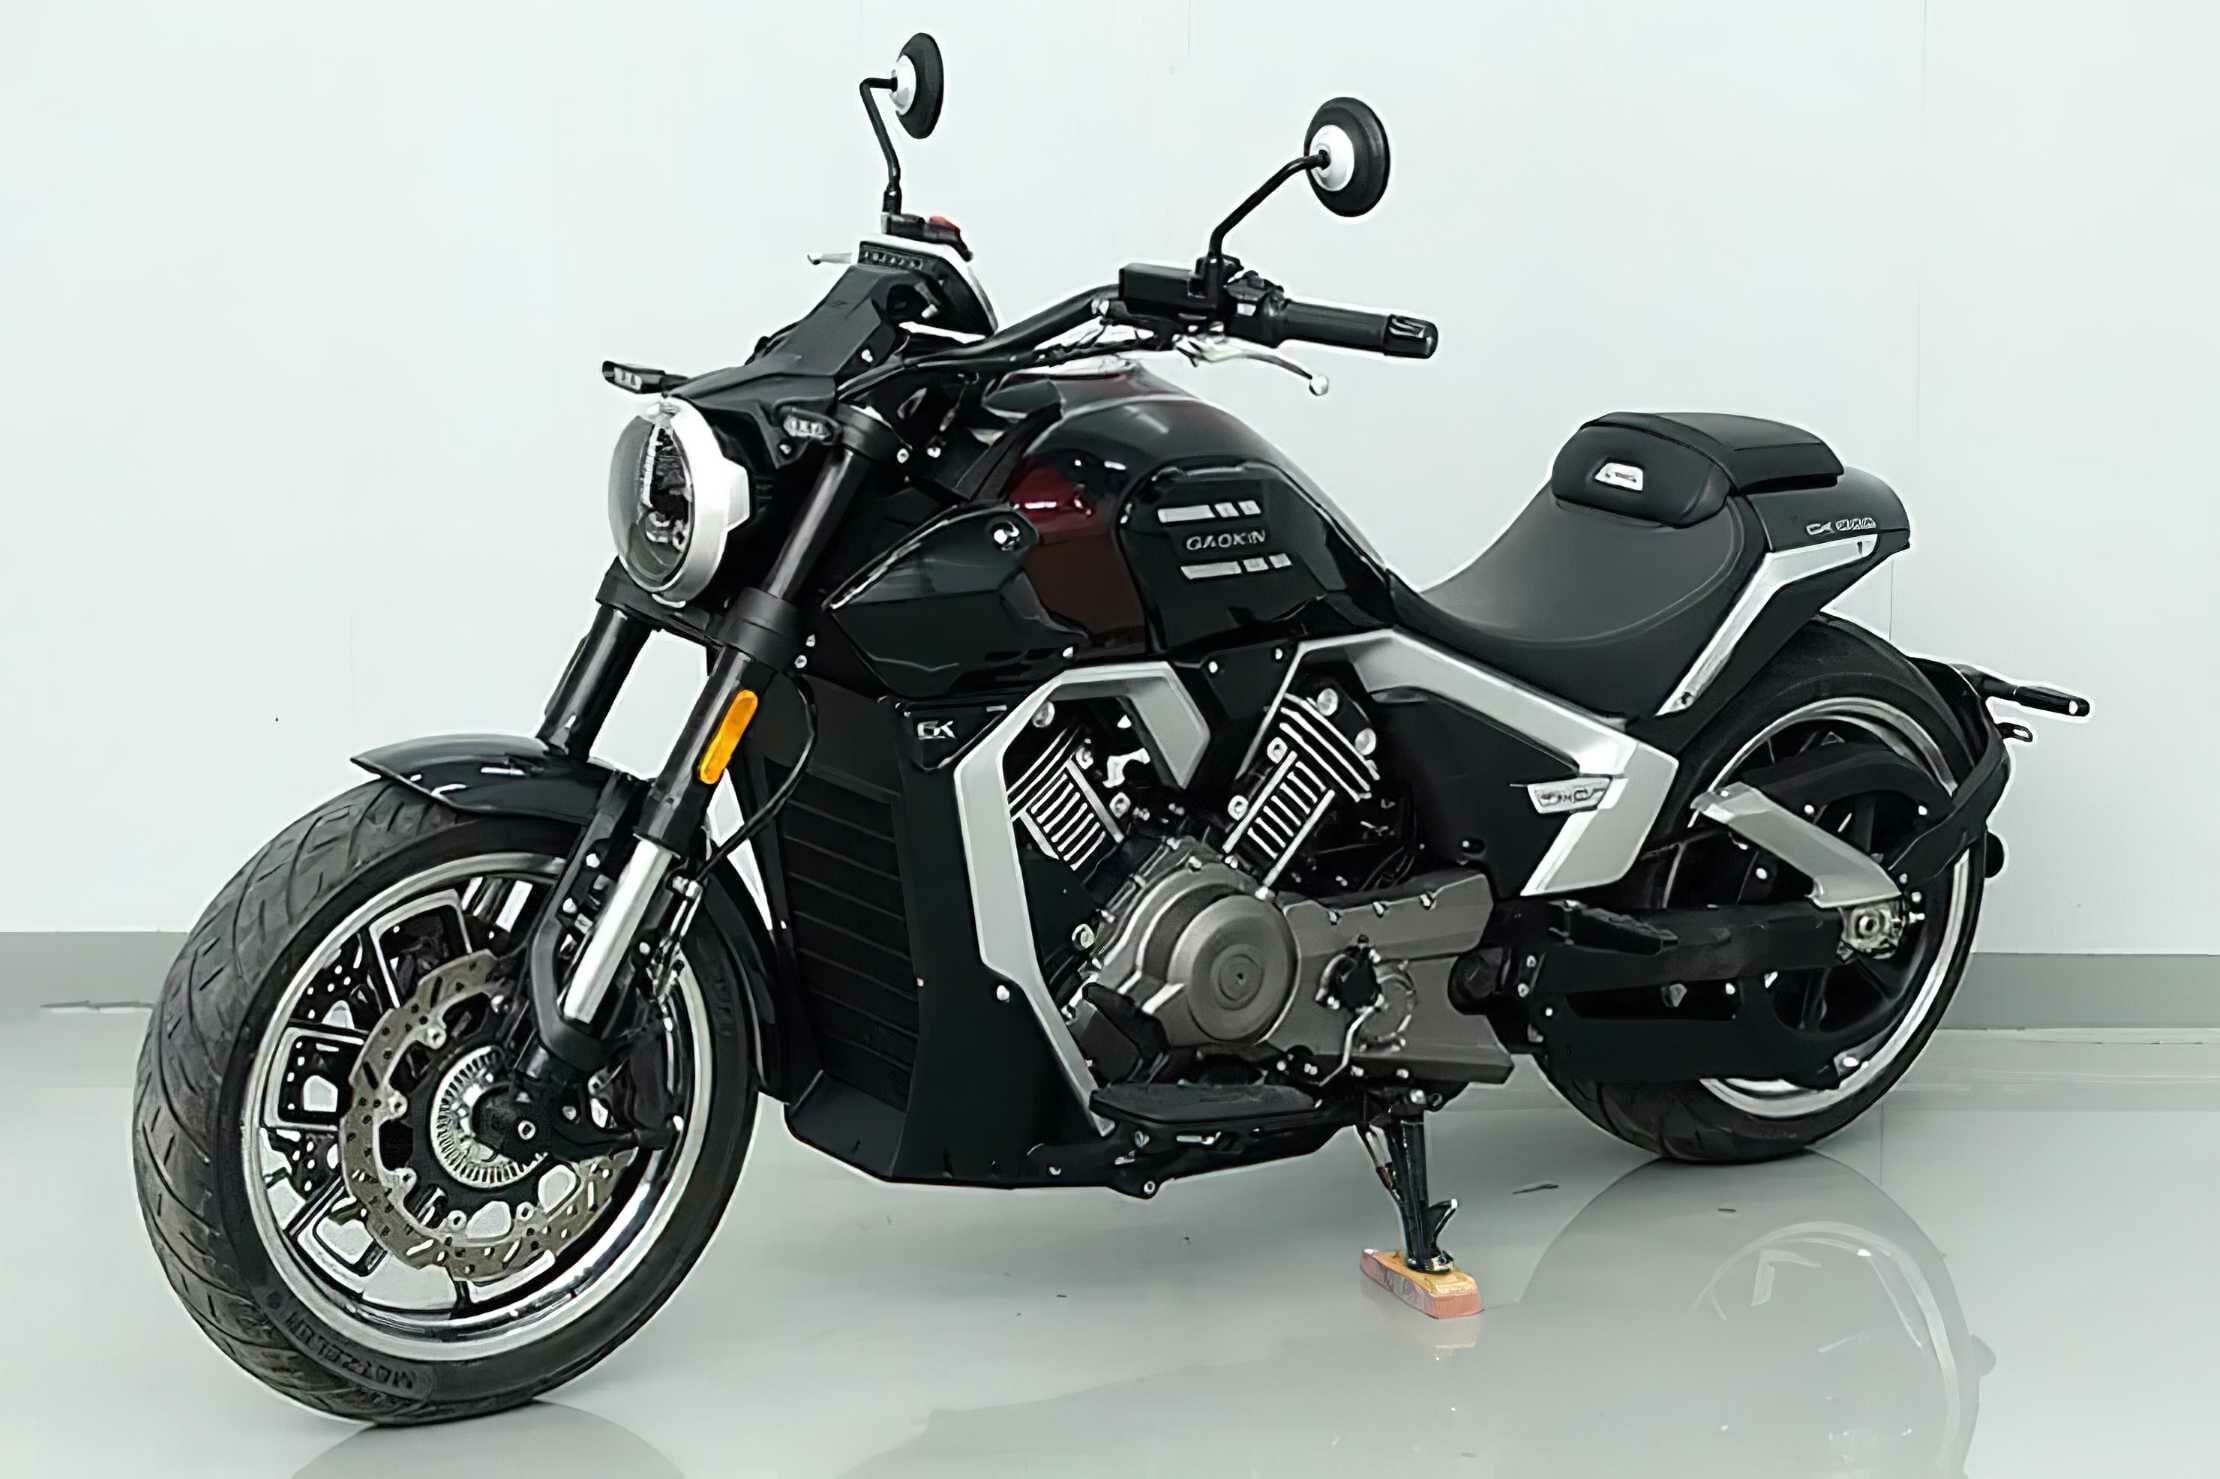 Die Gaokin GK1000 könnte eine neue Brixton für Europa werden - MOTORCYCLES.NEWS